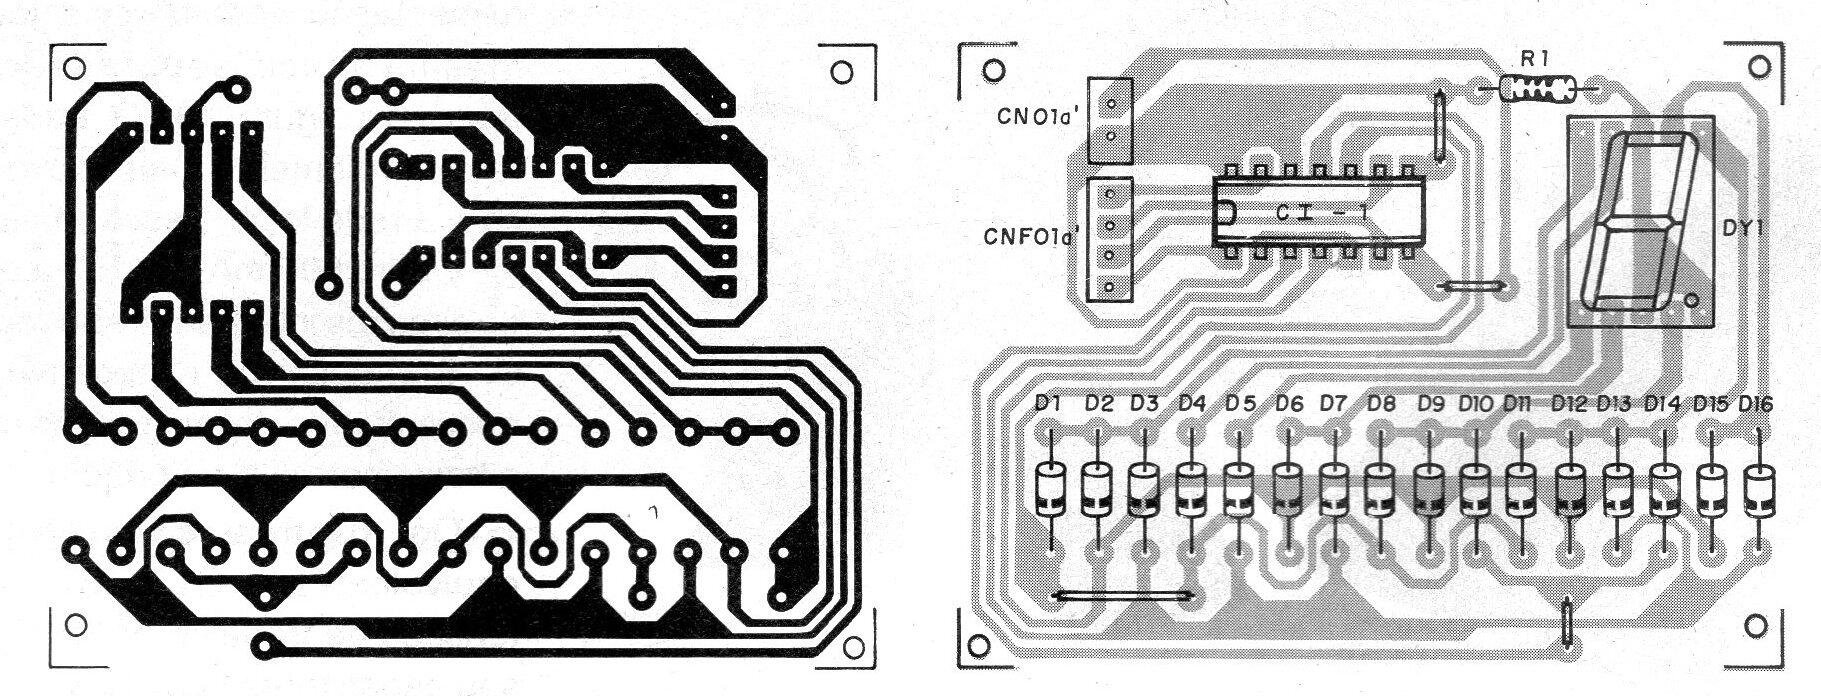    Figura 11 - Placa para el circuito del display
